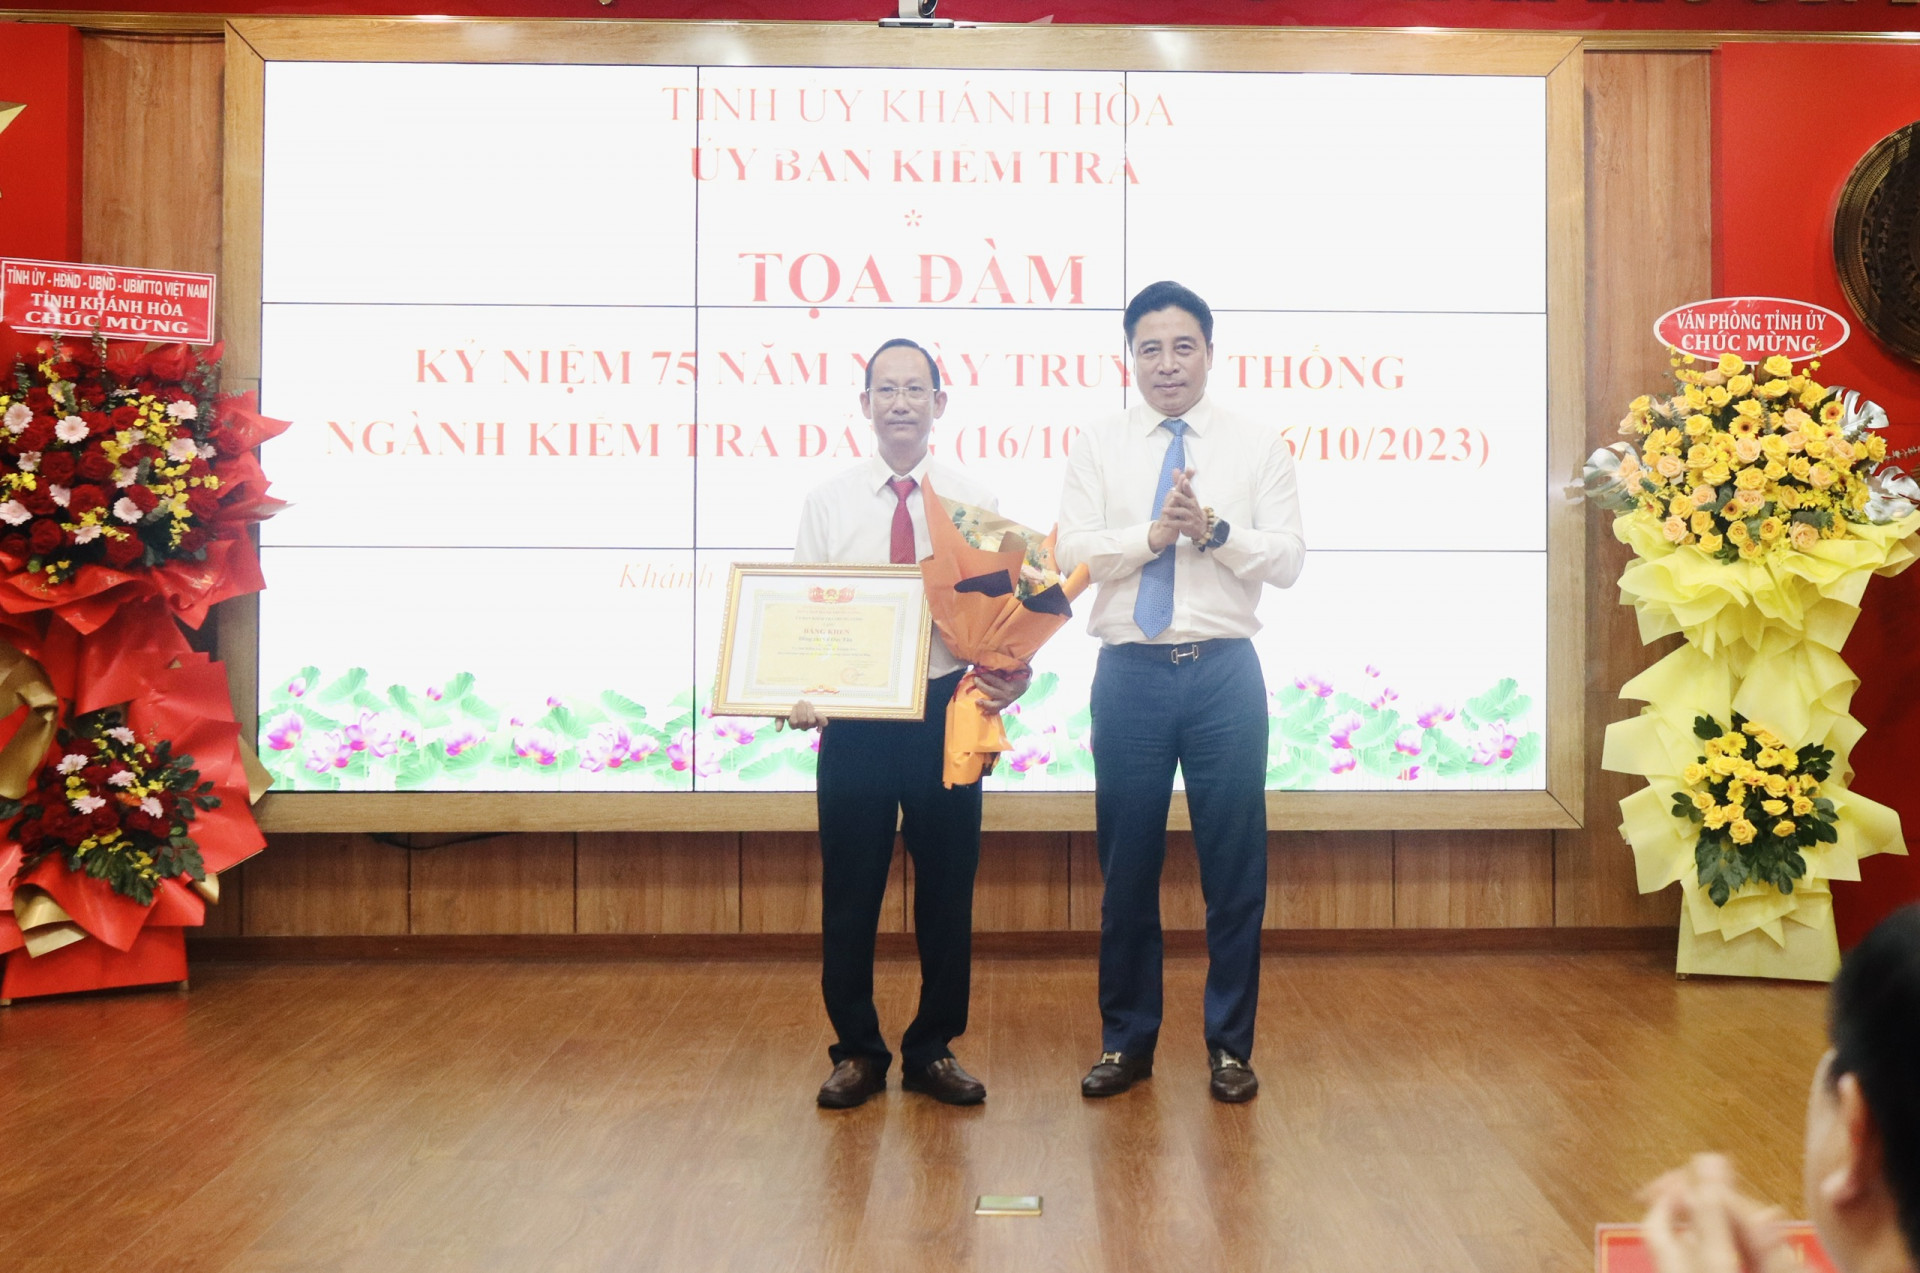 Phó Bí thư Thường trực Tỉnh ủy Nguyễn Khắc Toàn trao Bằng  khen của UBKT Trung ương cho ông Võ Duy Tân